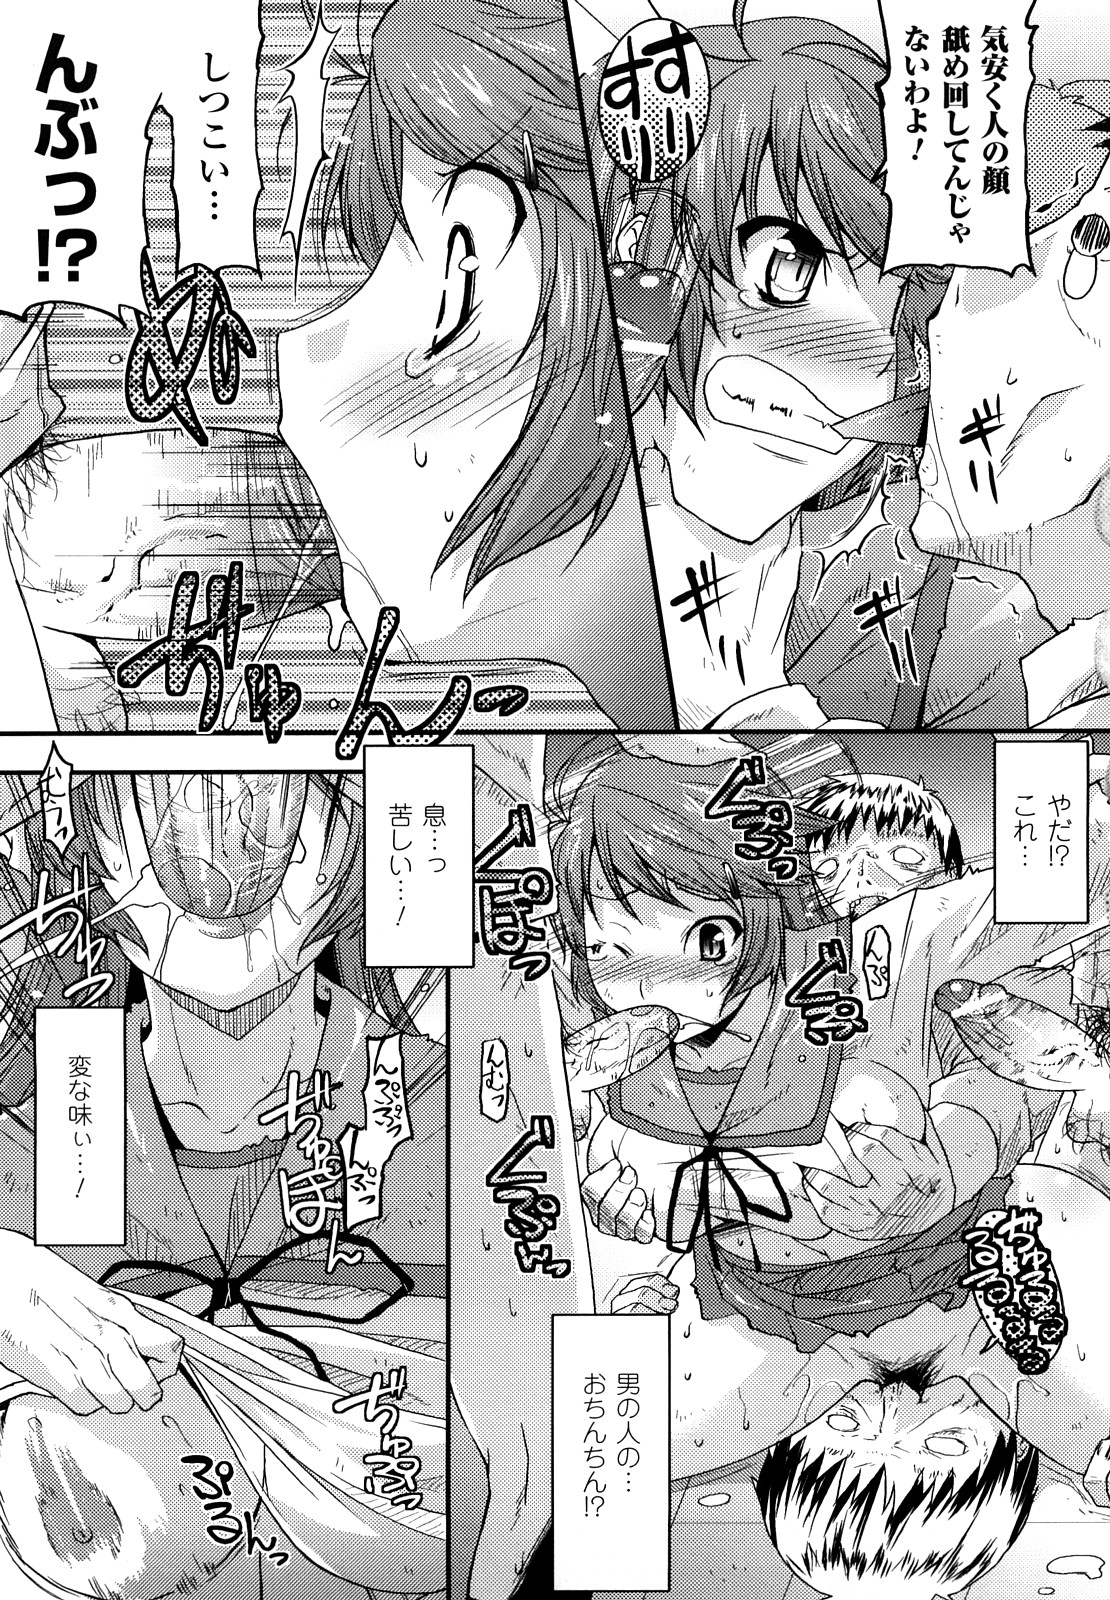 [Utamaro] Funi Puny Days page 11 full